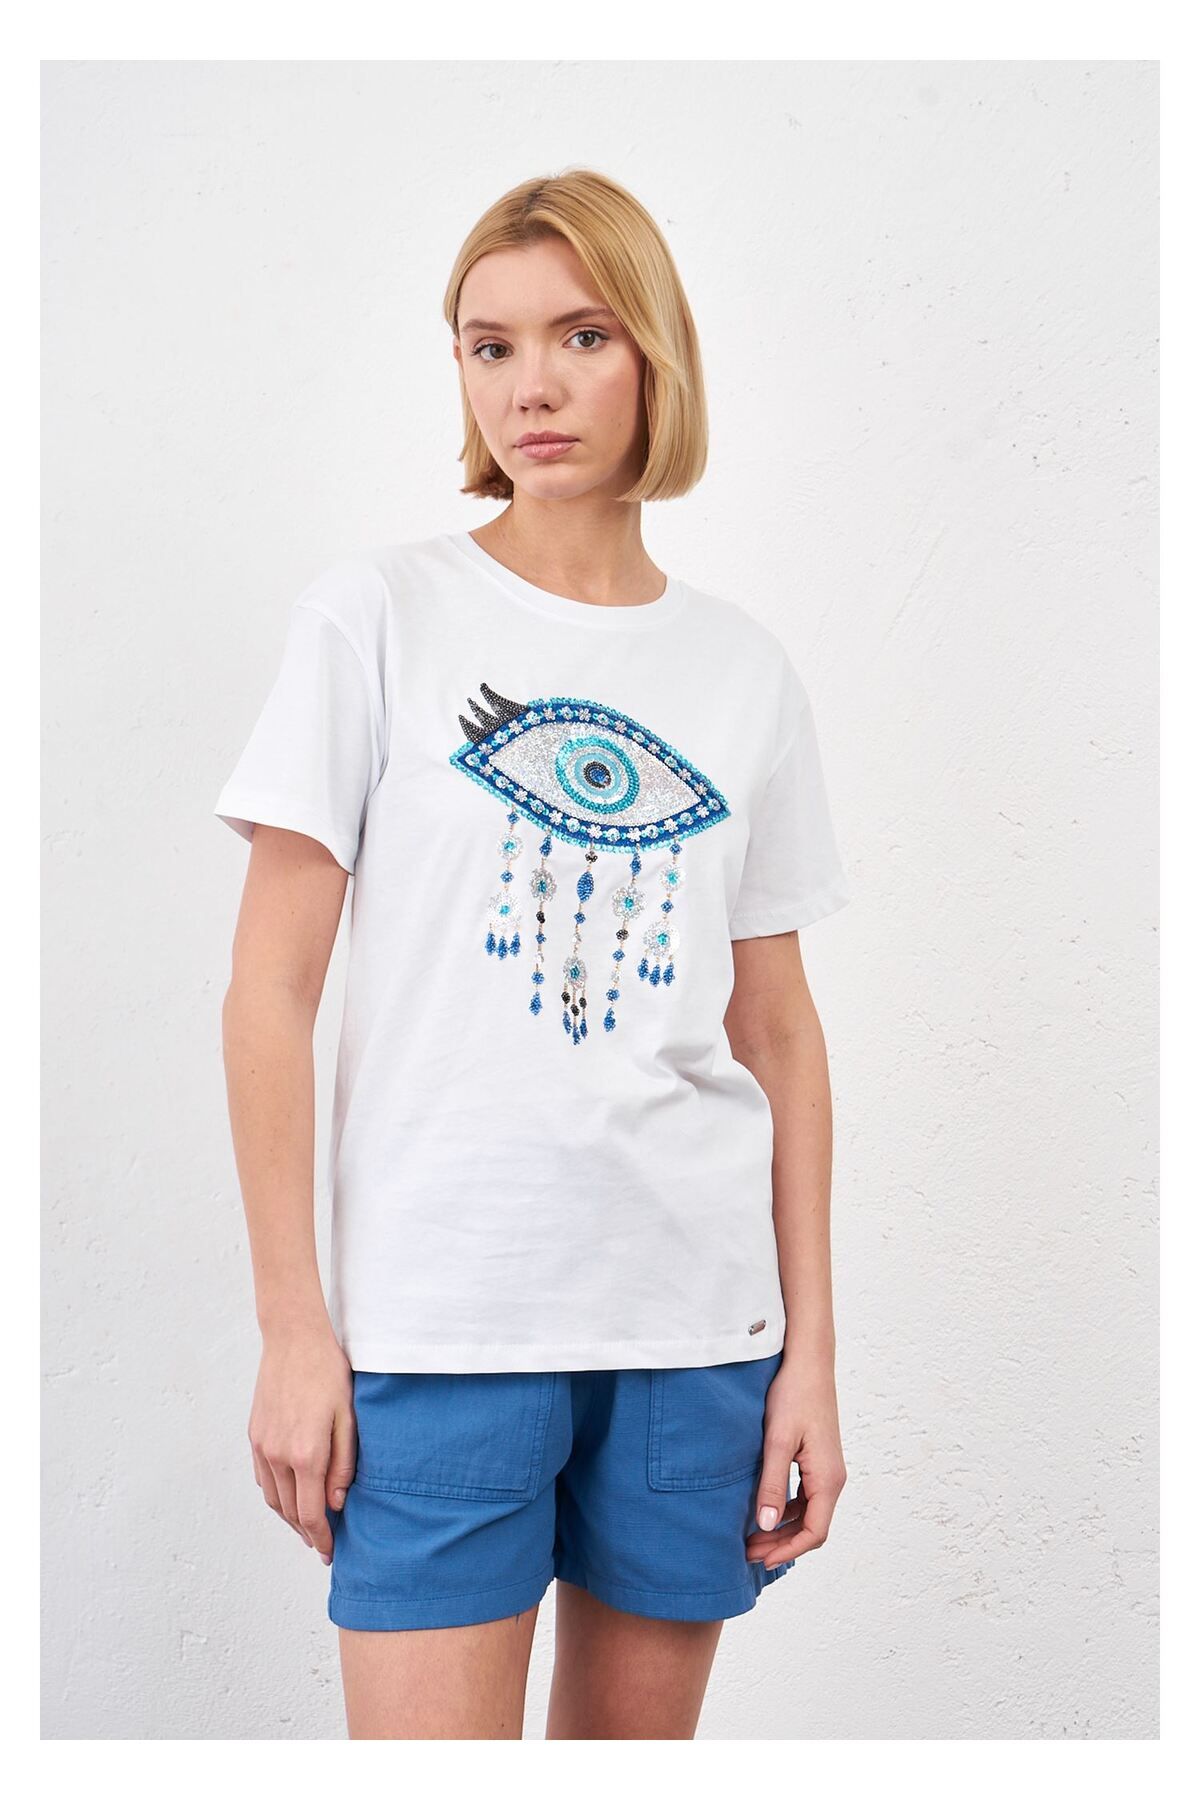 Tiffany Tomato Göz Baskılı T-shirt-Beyaz